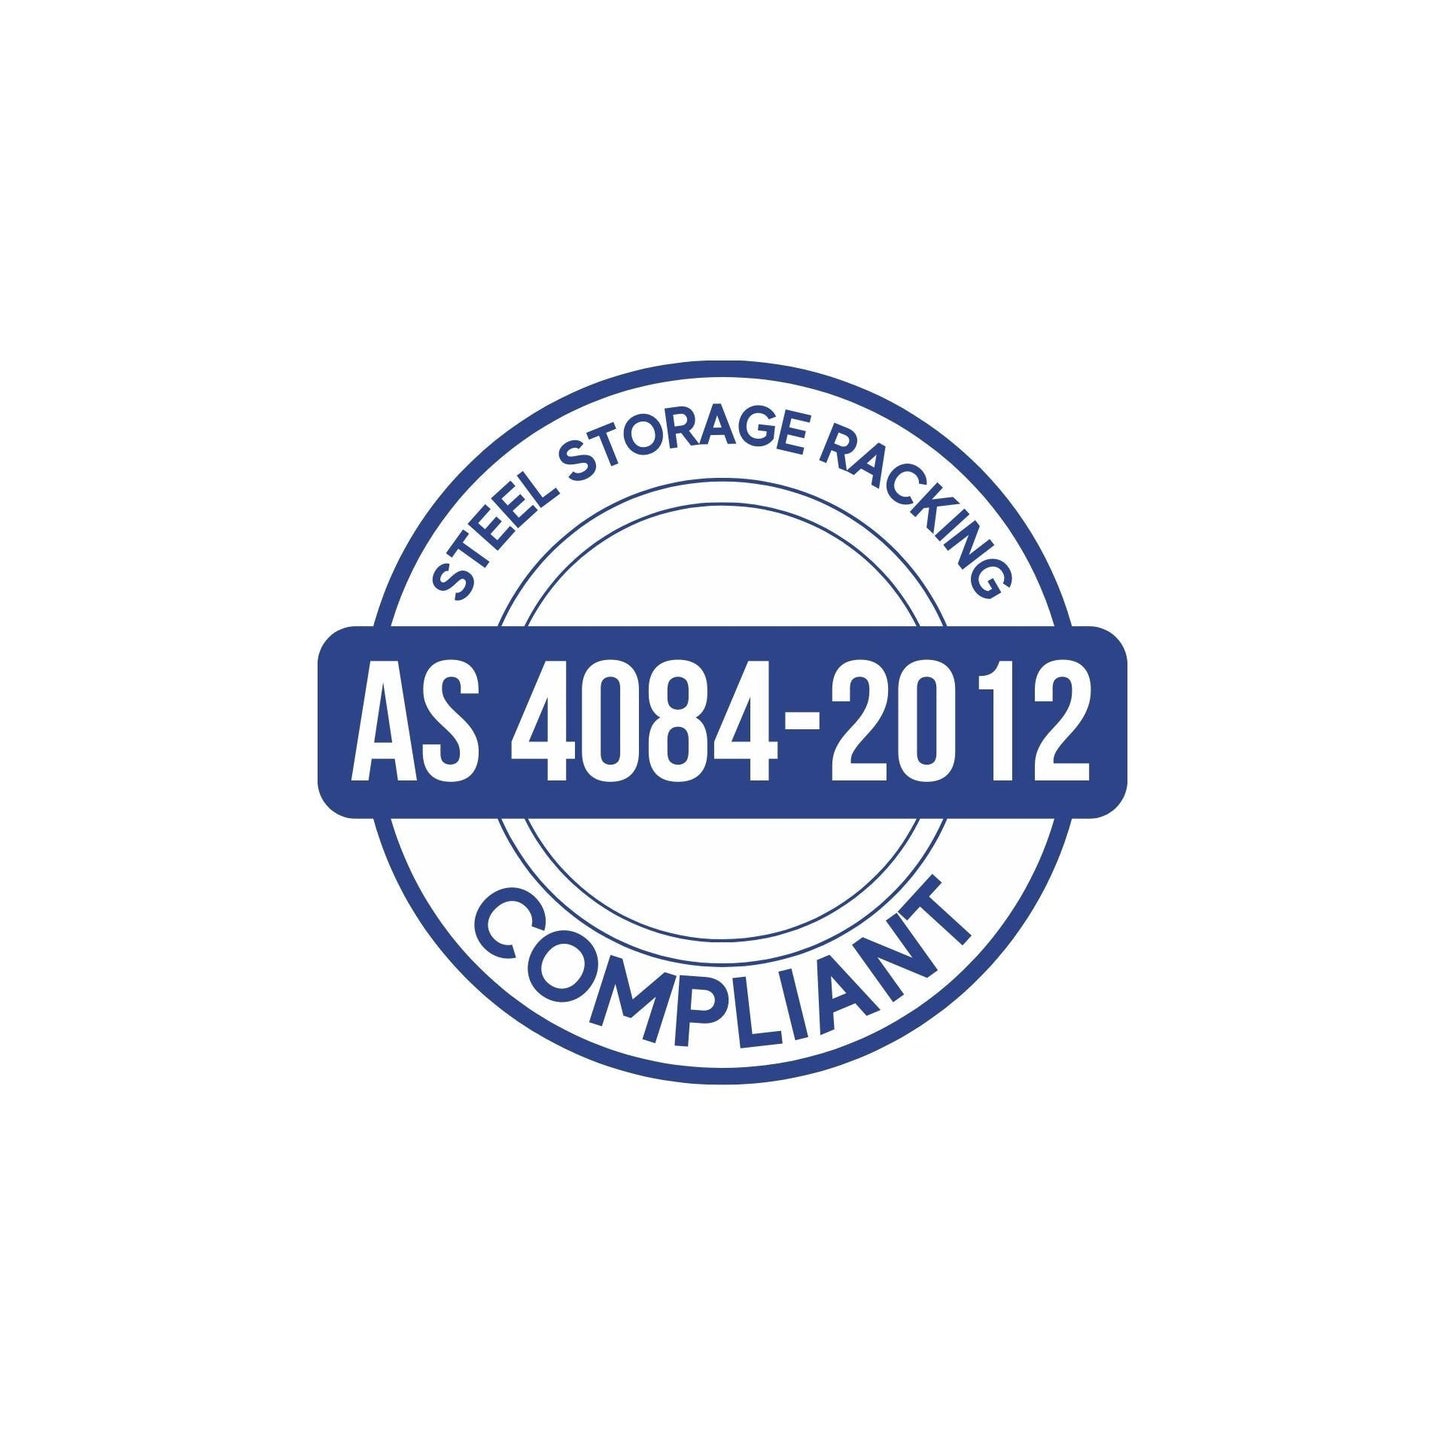 ReadyRack AS 4084-2012 Compliant